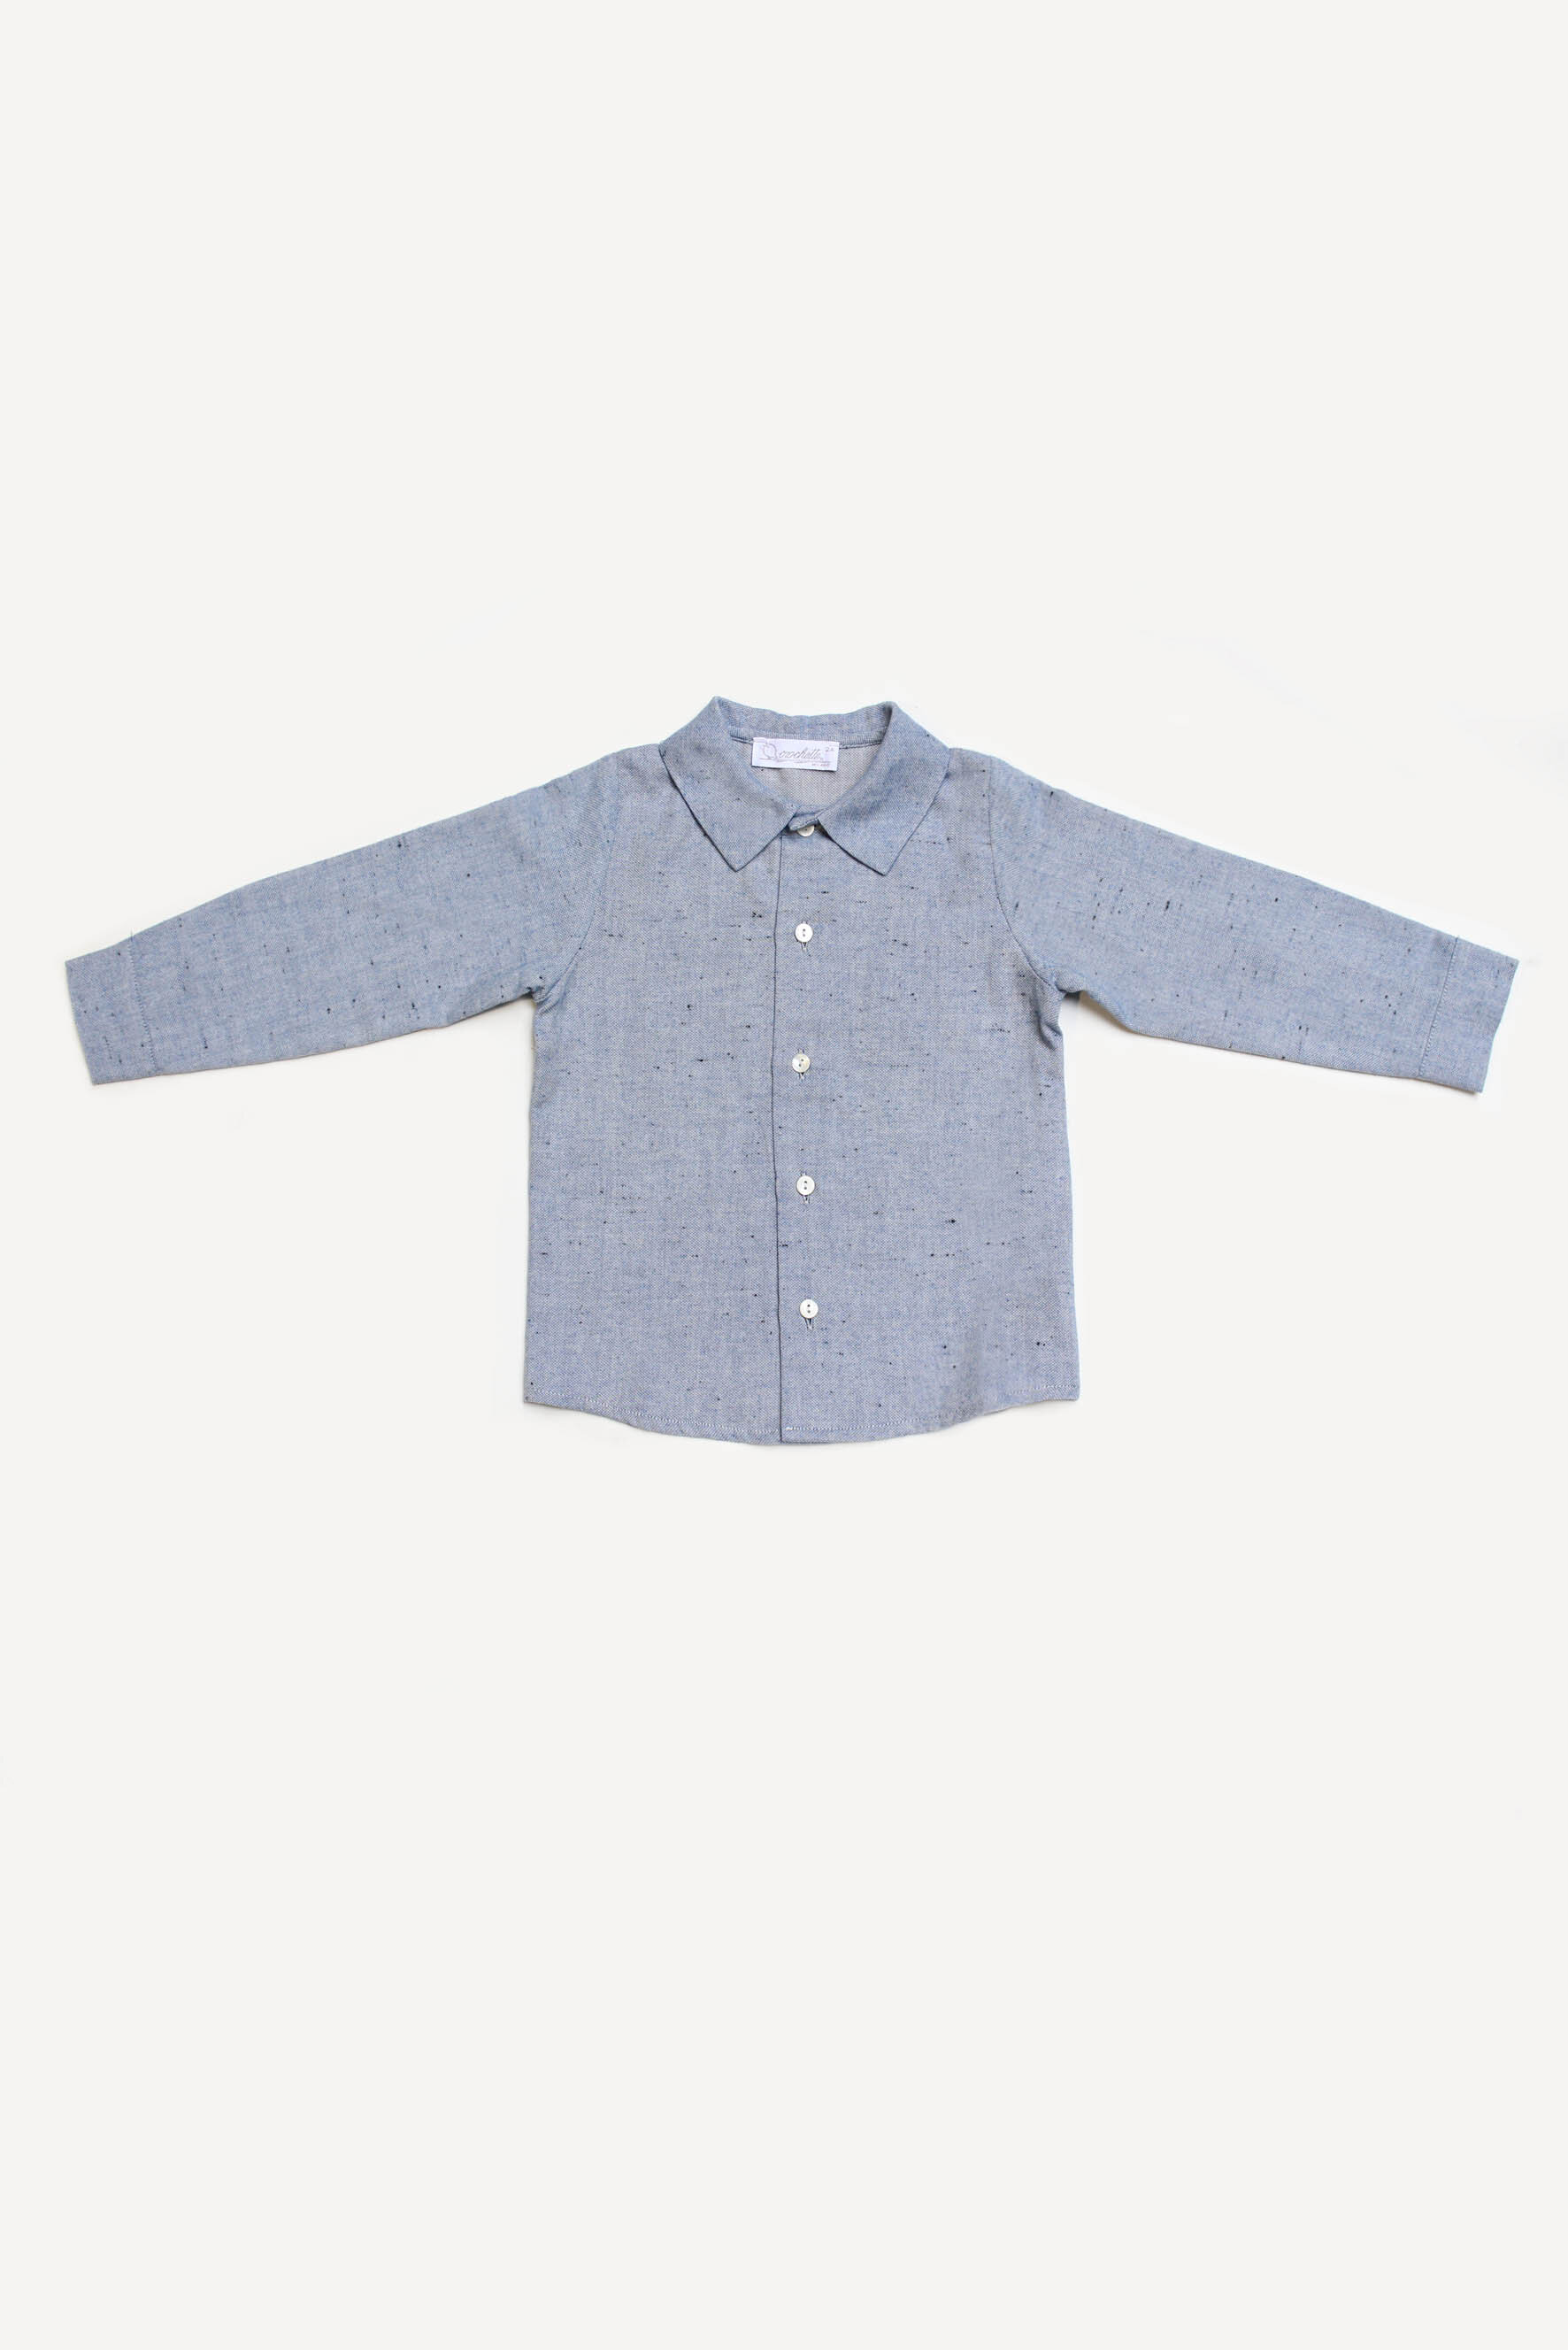 Camicia bambino azzurro polvere (Copia)